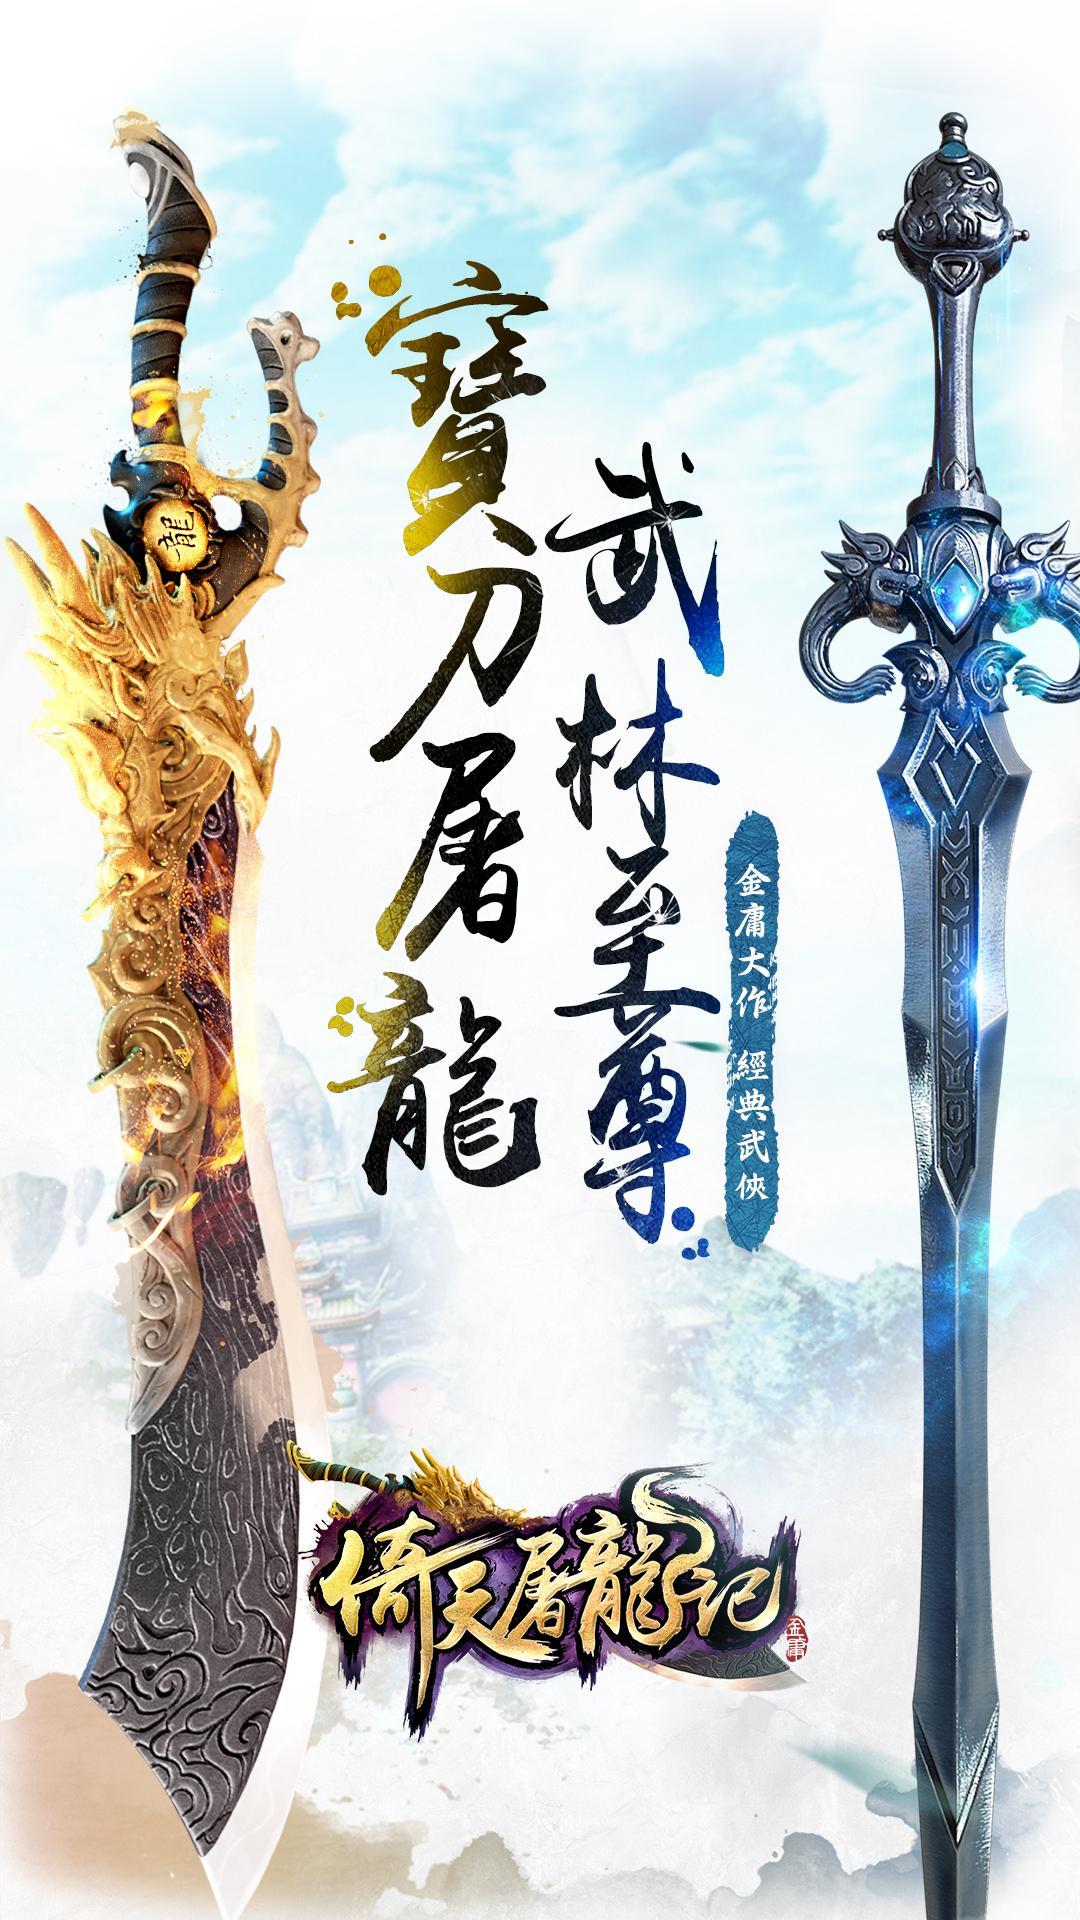 Screenshot 1 of Pedang Langit dan Pedang Naga 3D 1.7.5.0